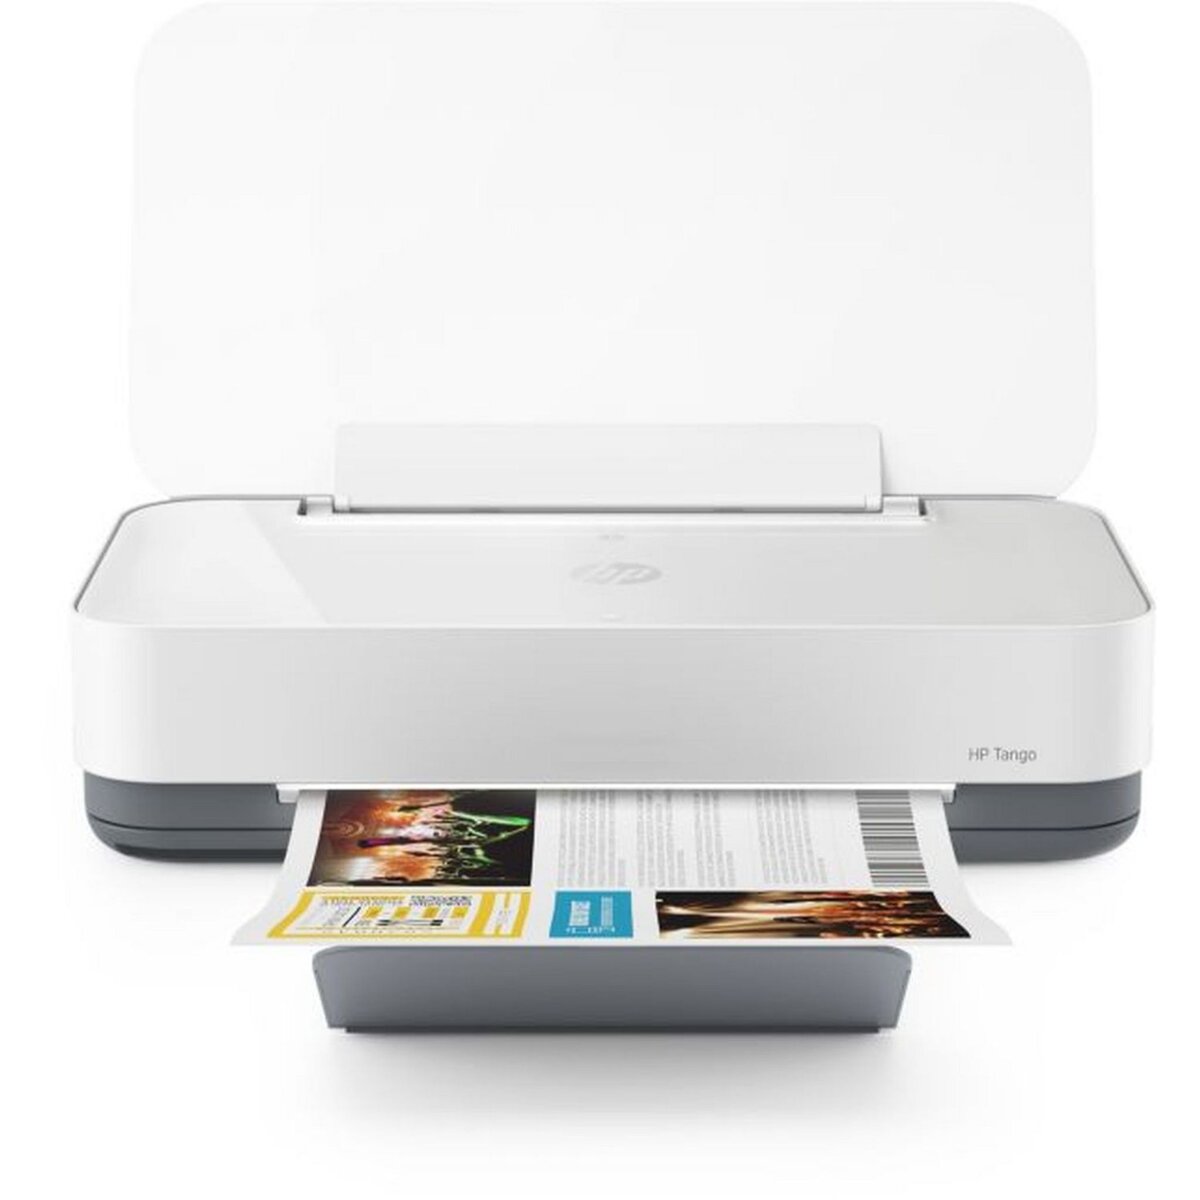 Imprimante jet d'encre HP Envy 6032e éligible Instant Ink +